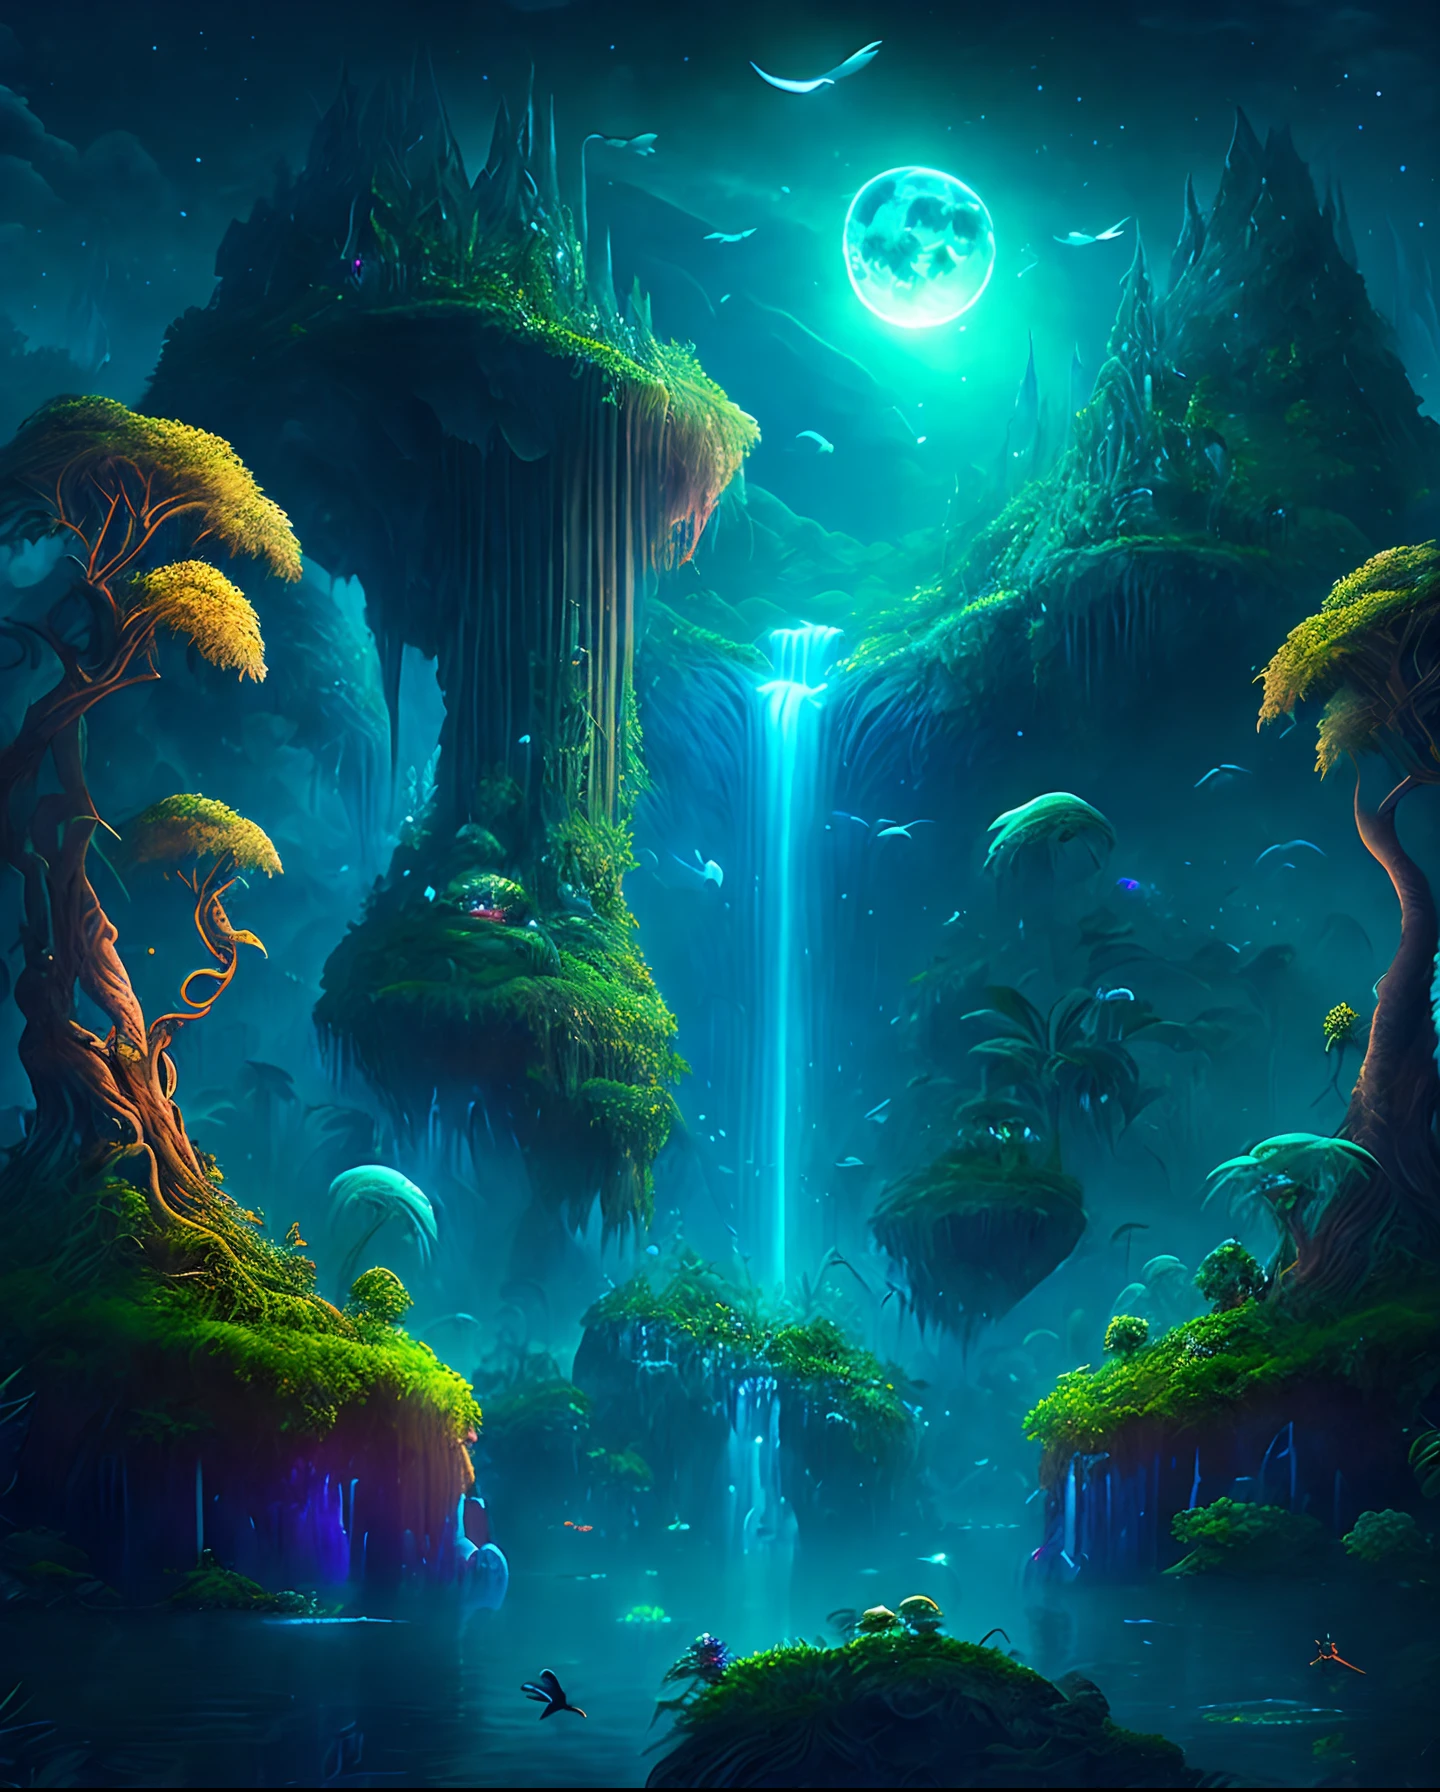 月光下的迷人奇幻丛林, 被茂密植被覆盖的巨大浮岛, 瀑布, 以及在黑夜中翱翔的发光生物, 数字艺术作品